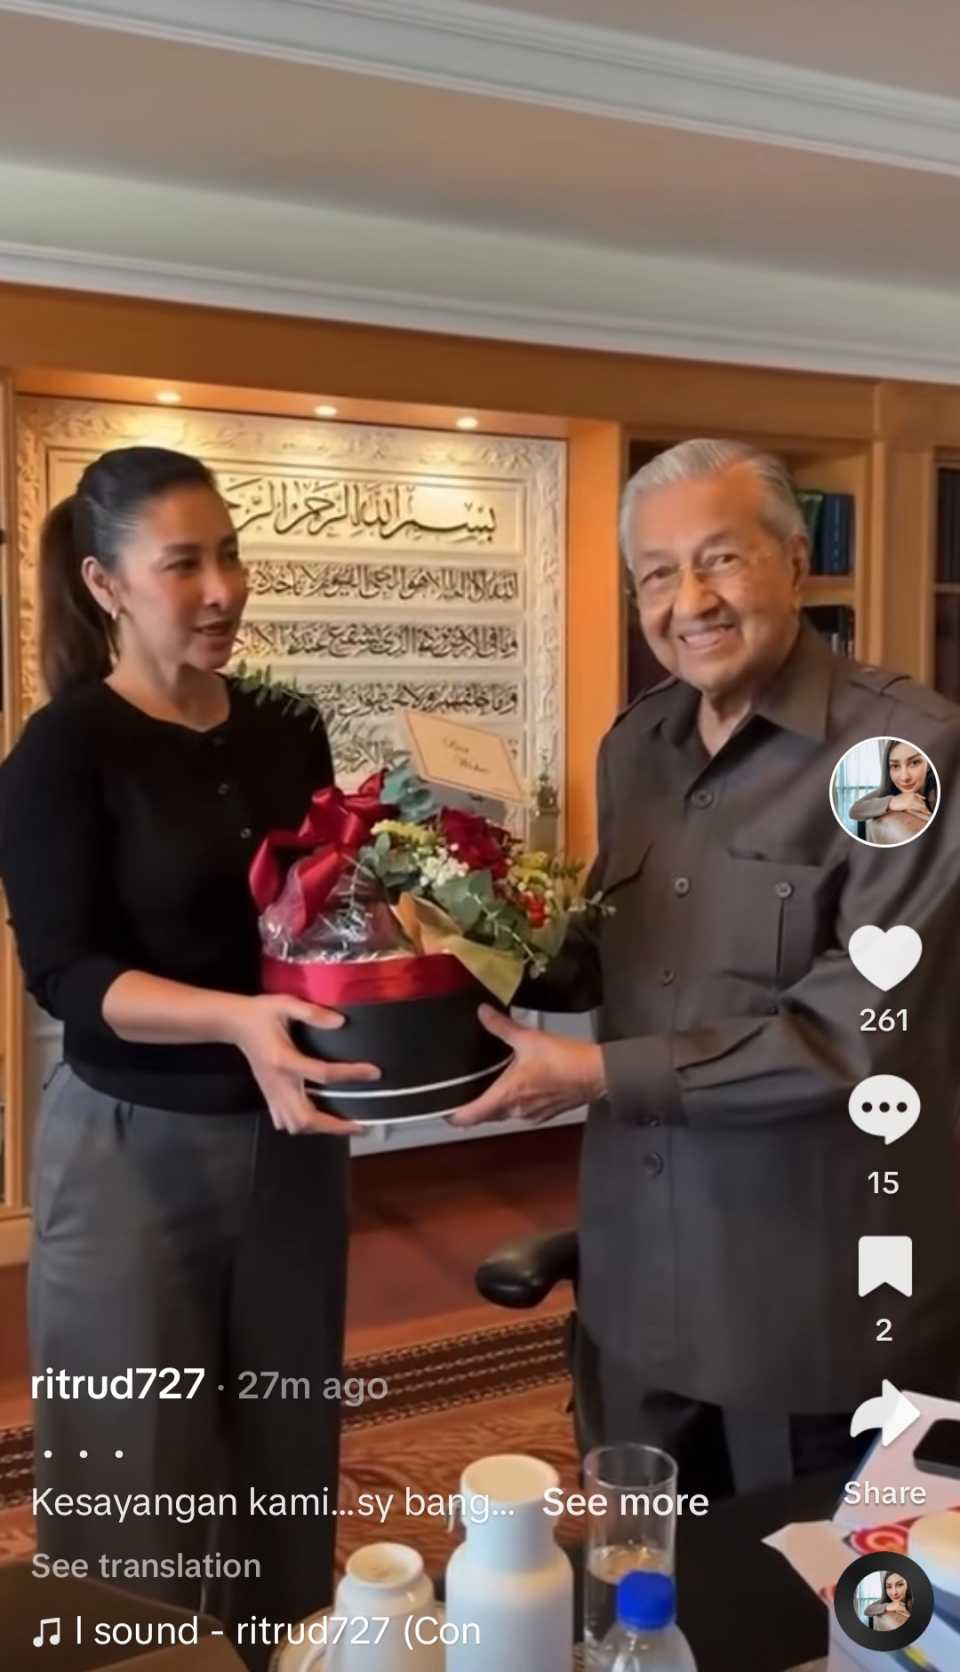 Rita Rudaini luah bangga membesar di zaman Tun Mahathir